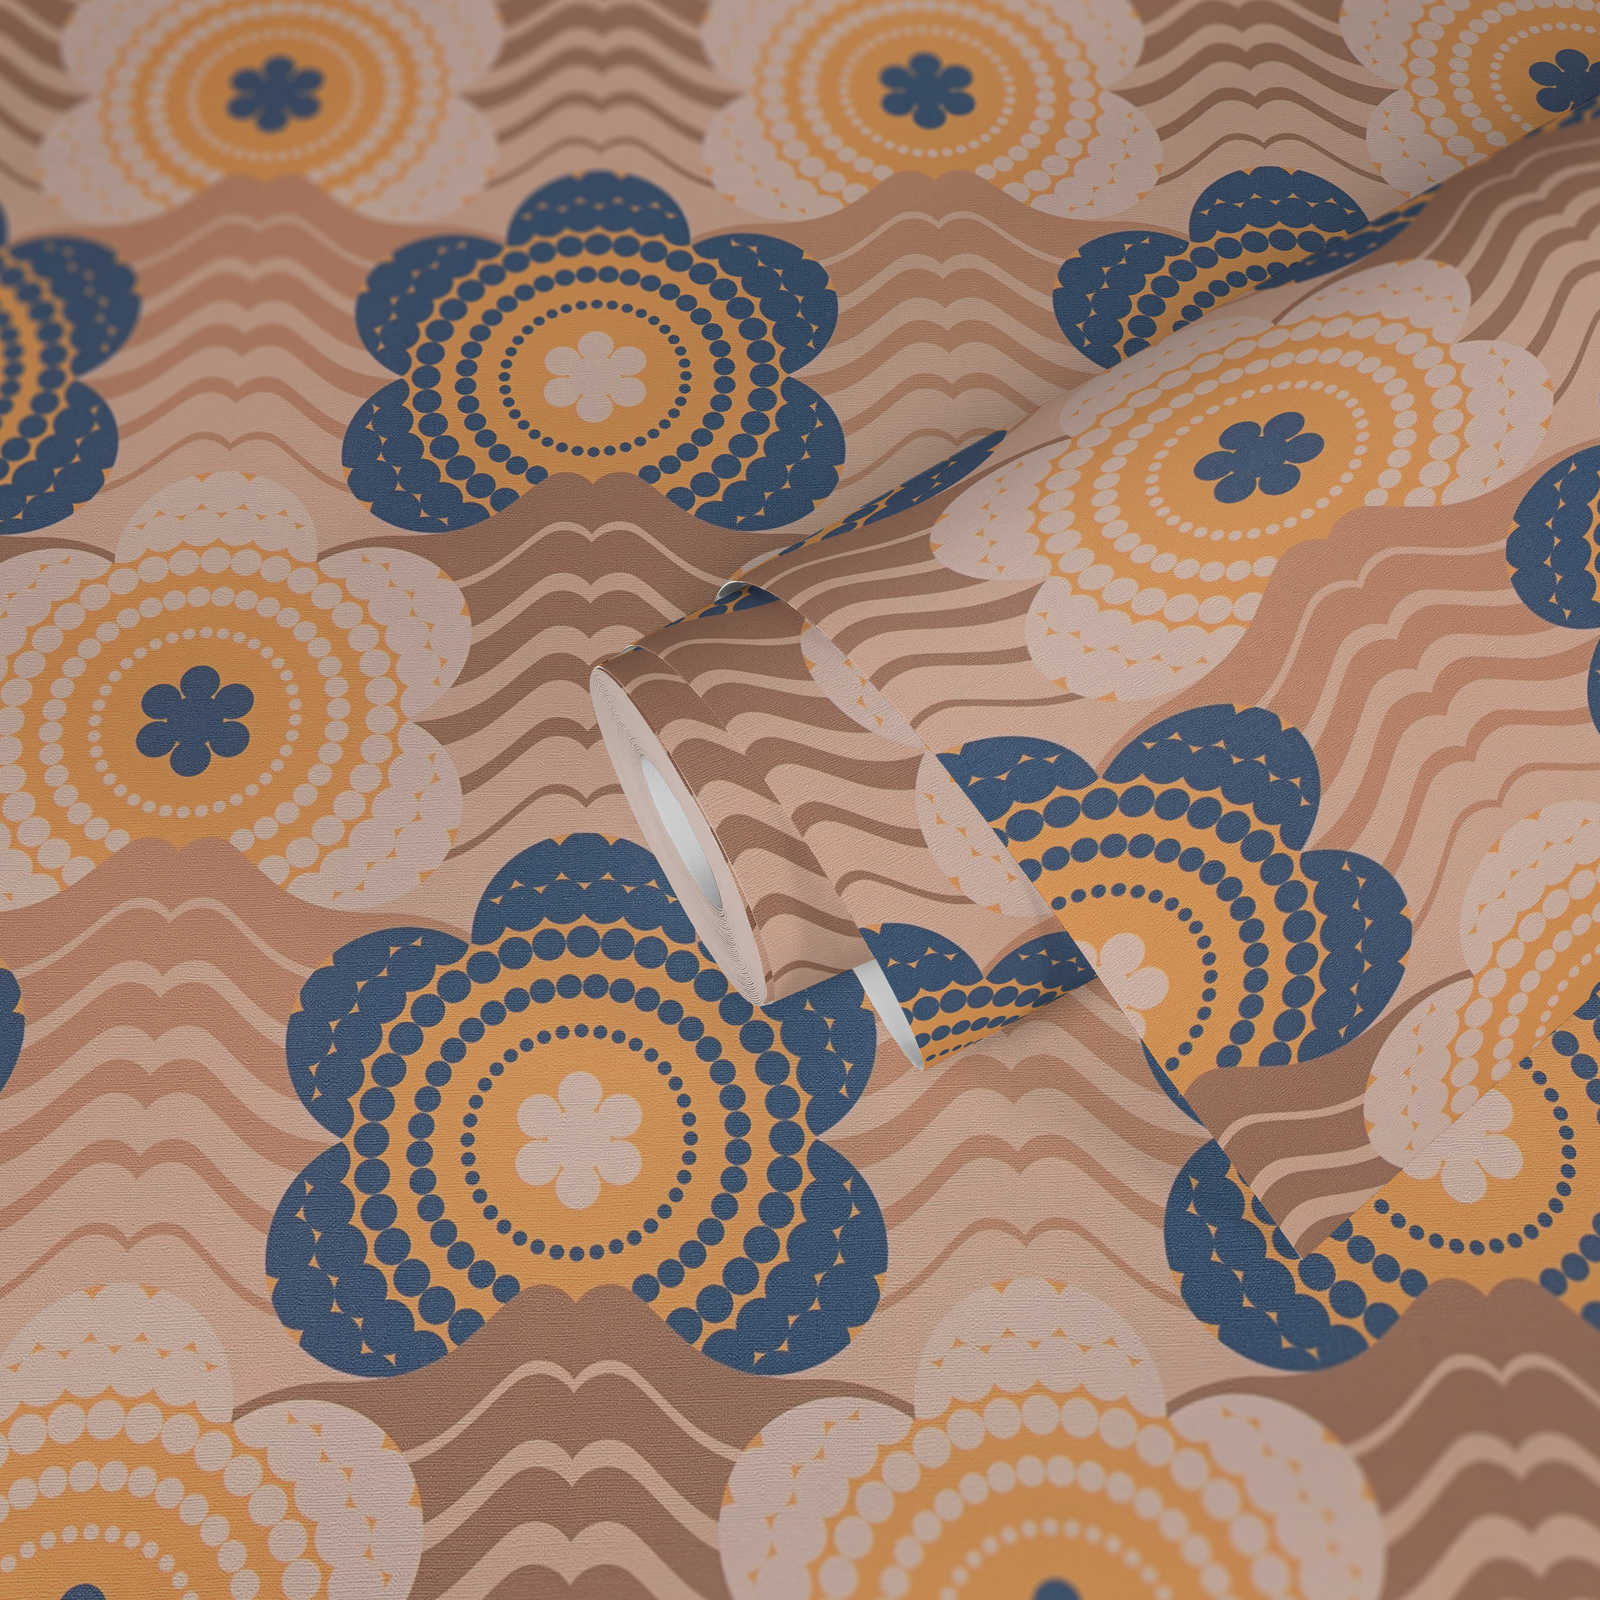             Leicht strukturierte Tapete mit Wellen und Blumen Bemusterung – Beige, Braun, Blau
        